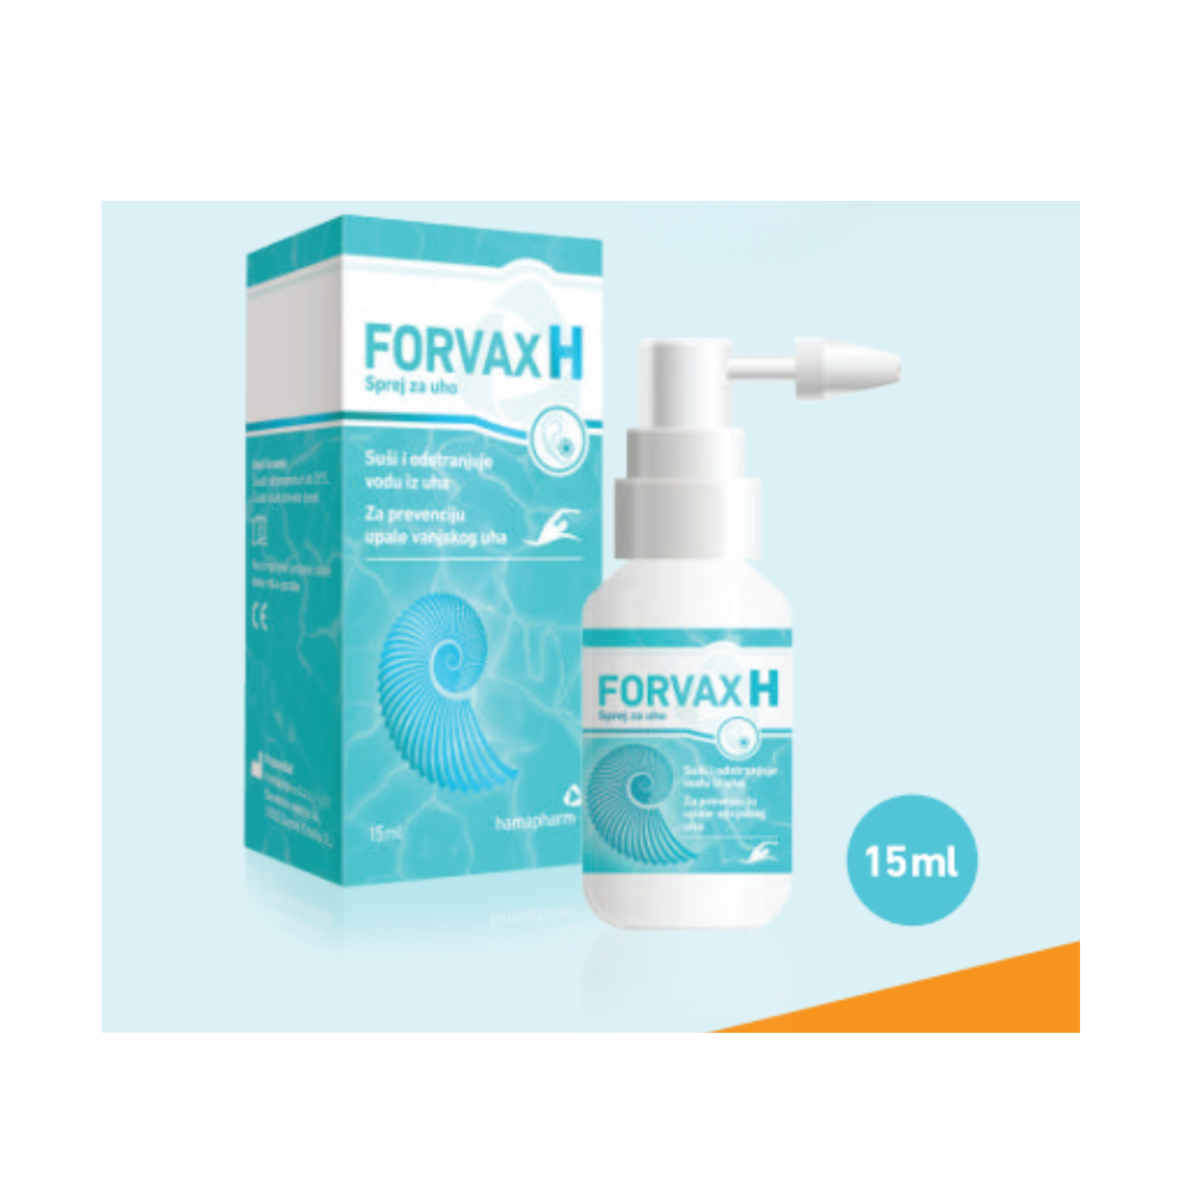 Forvax H sprej za uho 15ml